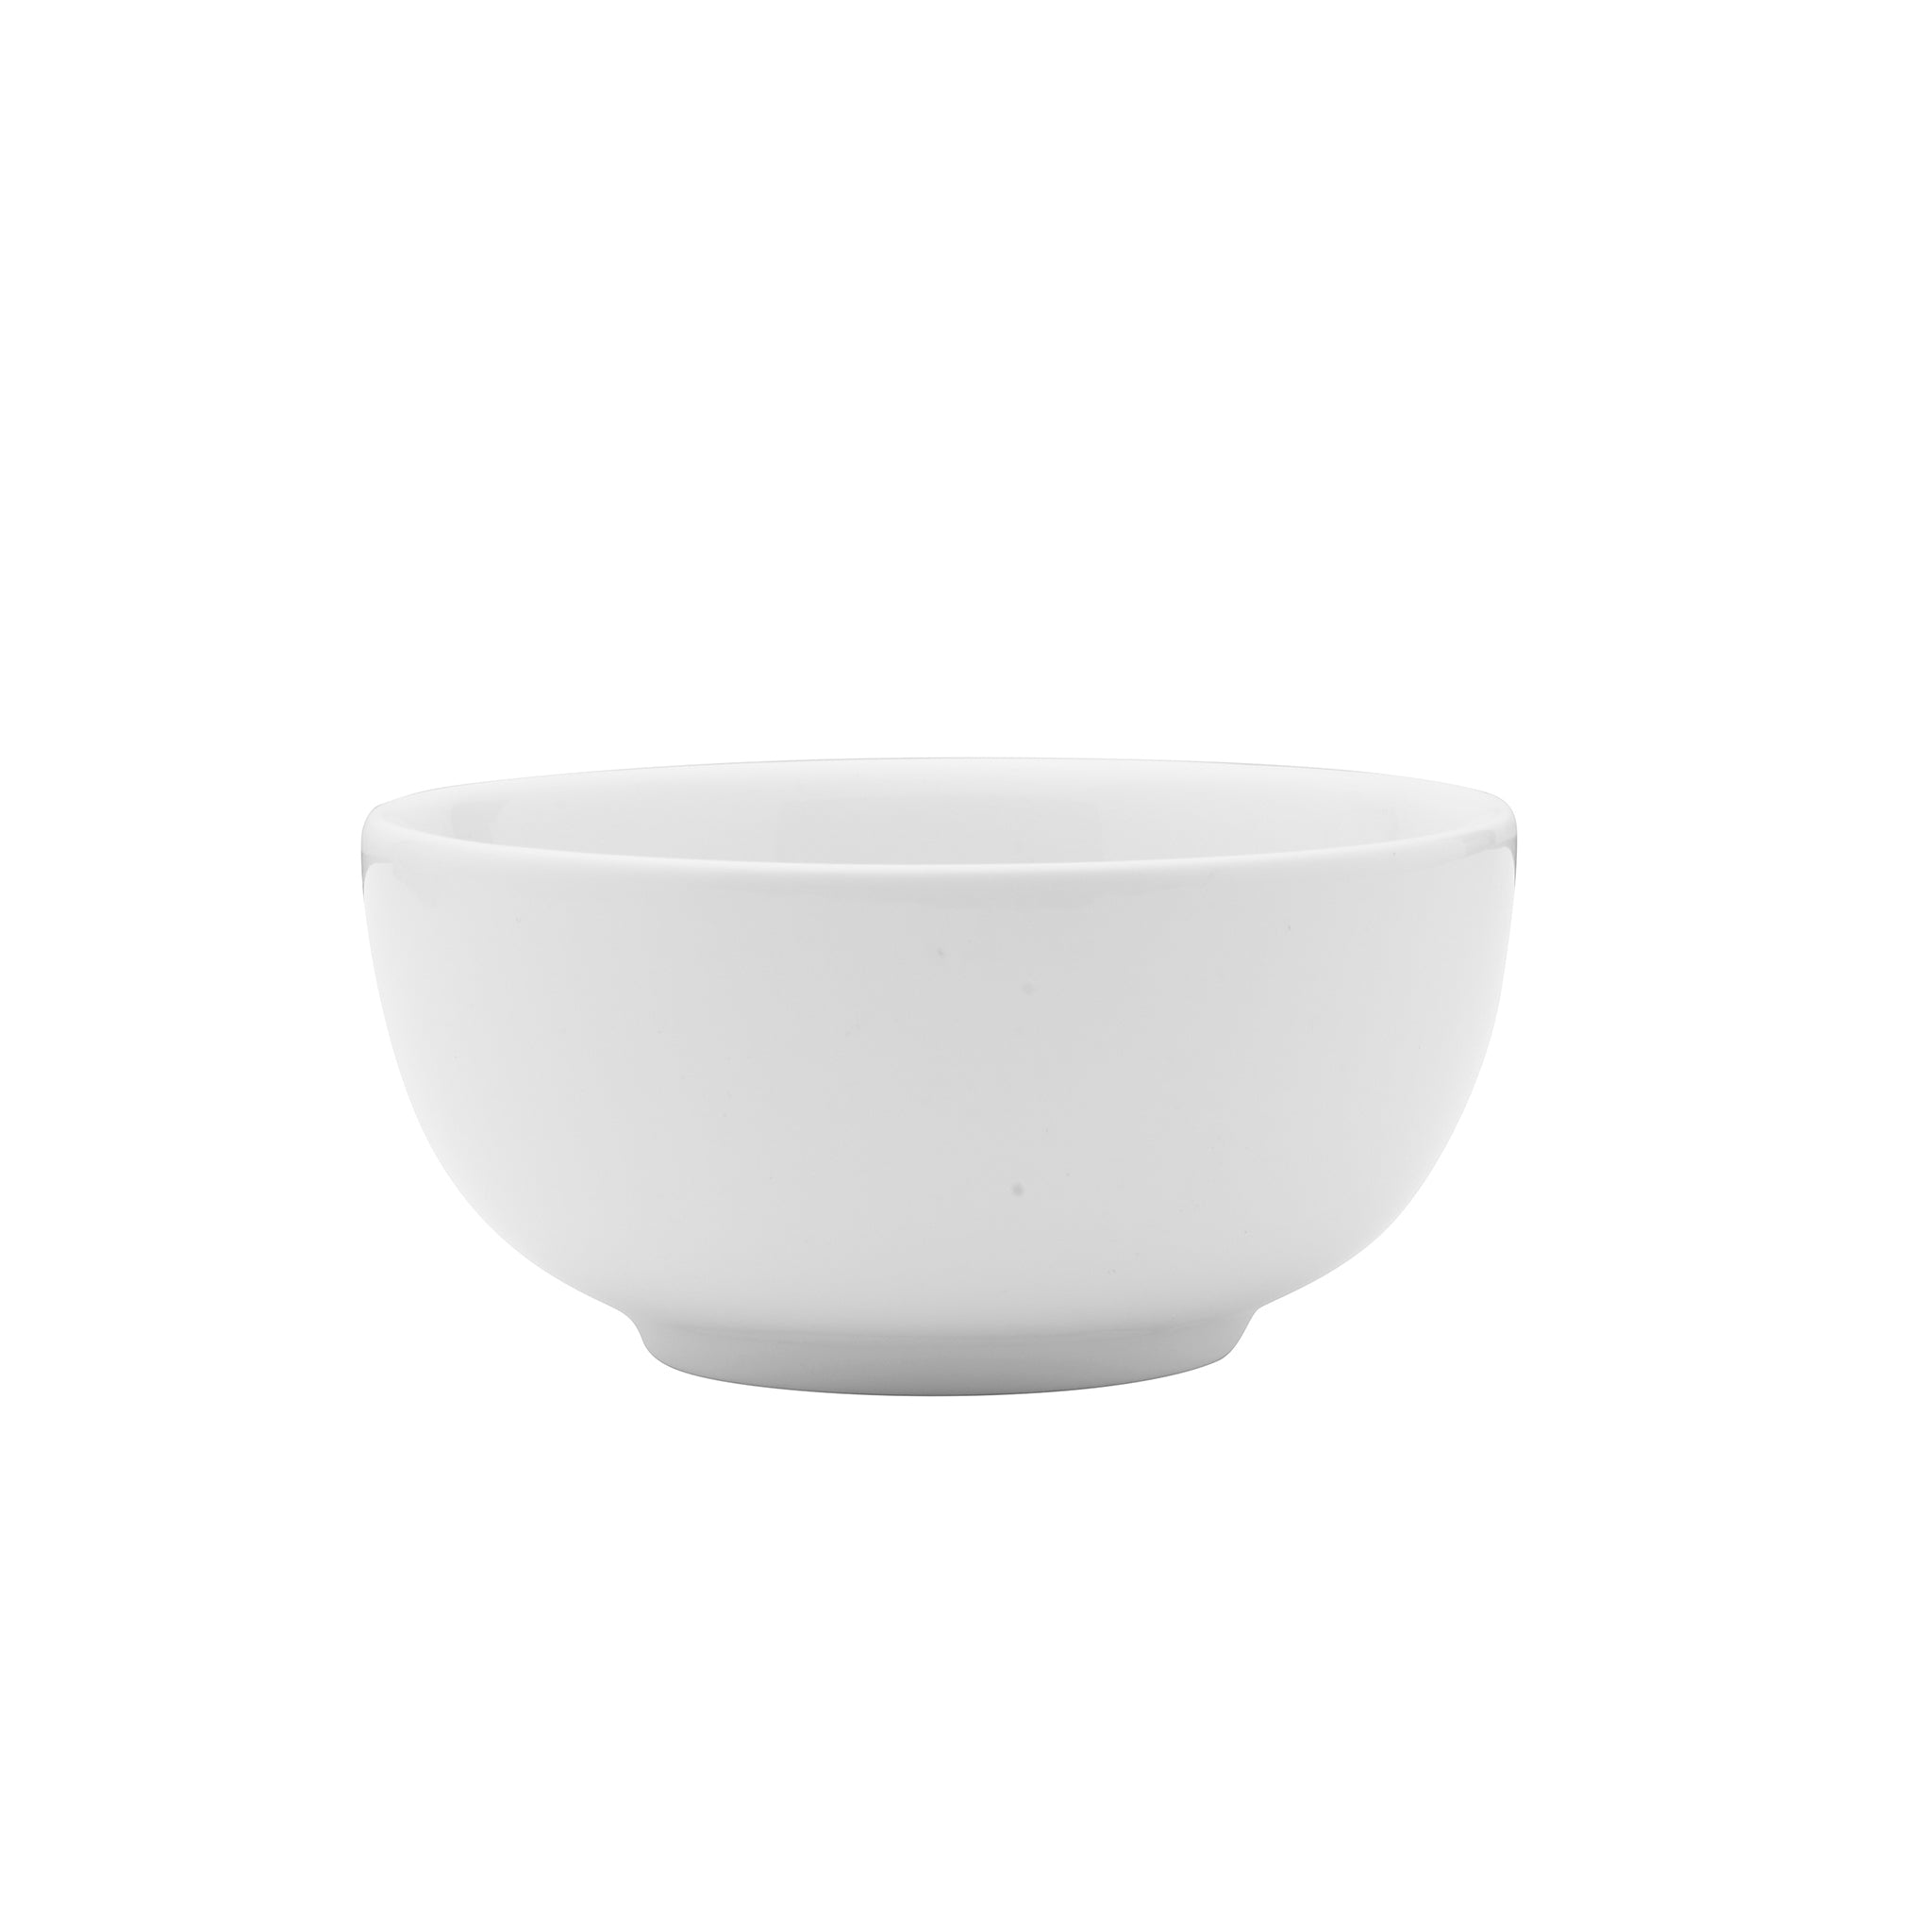 Galleria Porcelain Bowl 4.8" / 13.6oz White